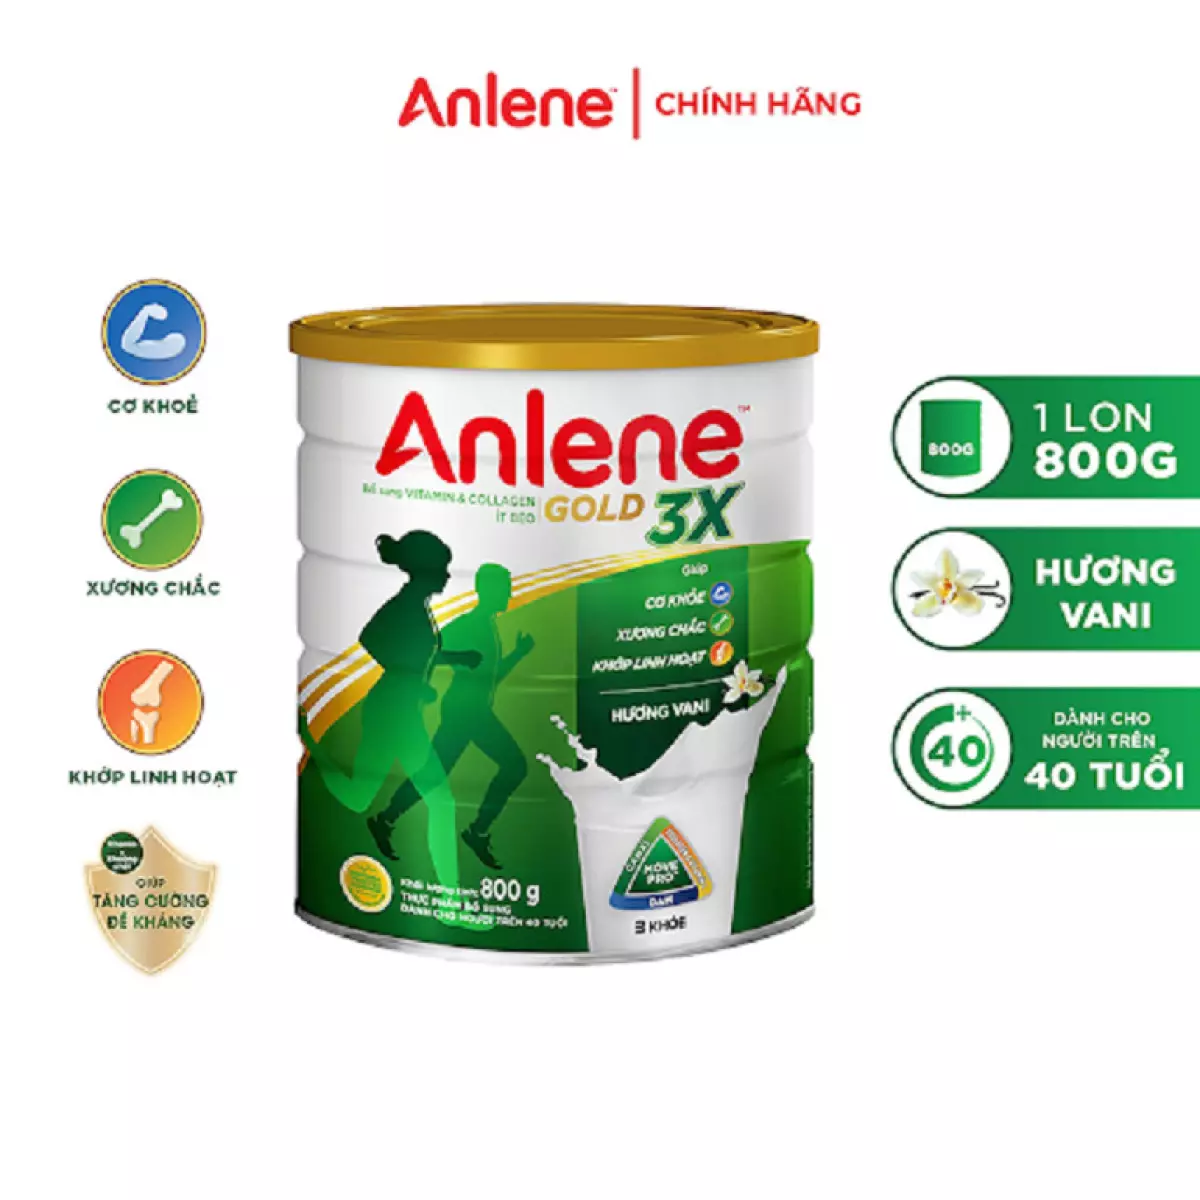 Anlene là một thương hiệu sữa chống loãng xương nổi tiếng được nhiều người tiêu dùng Việt tin tưởng và sử dụng.